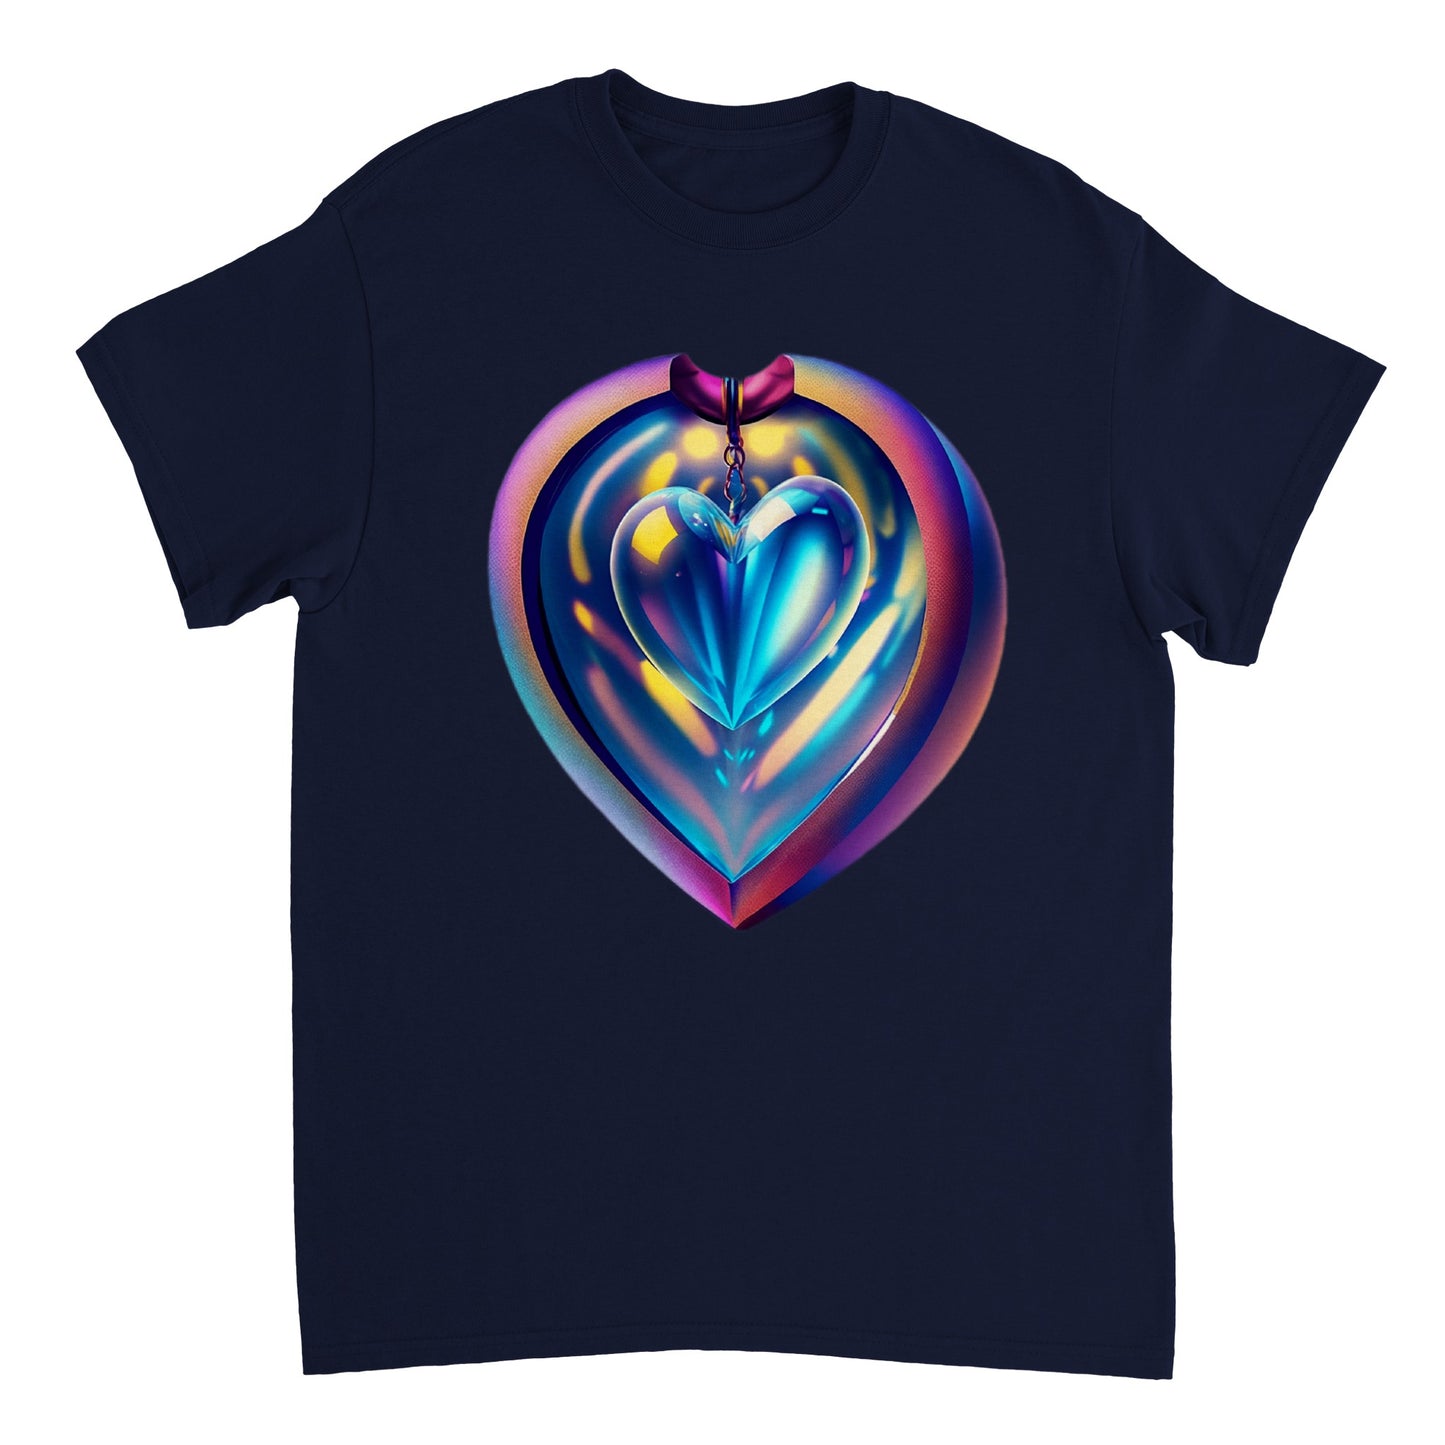 Love Heart - Heavyweight Unisex Crewneck T-shirt 59